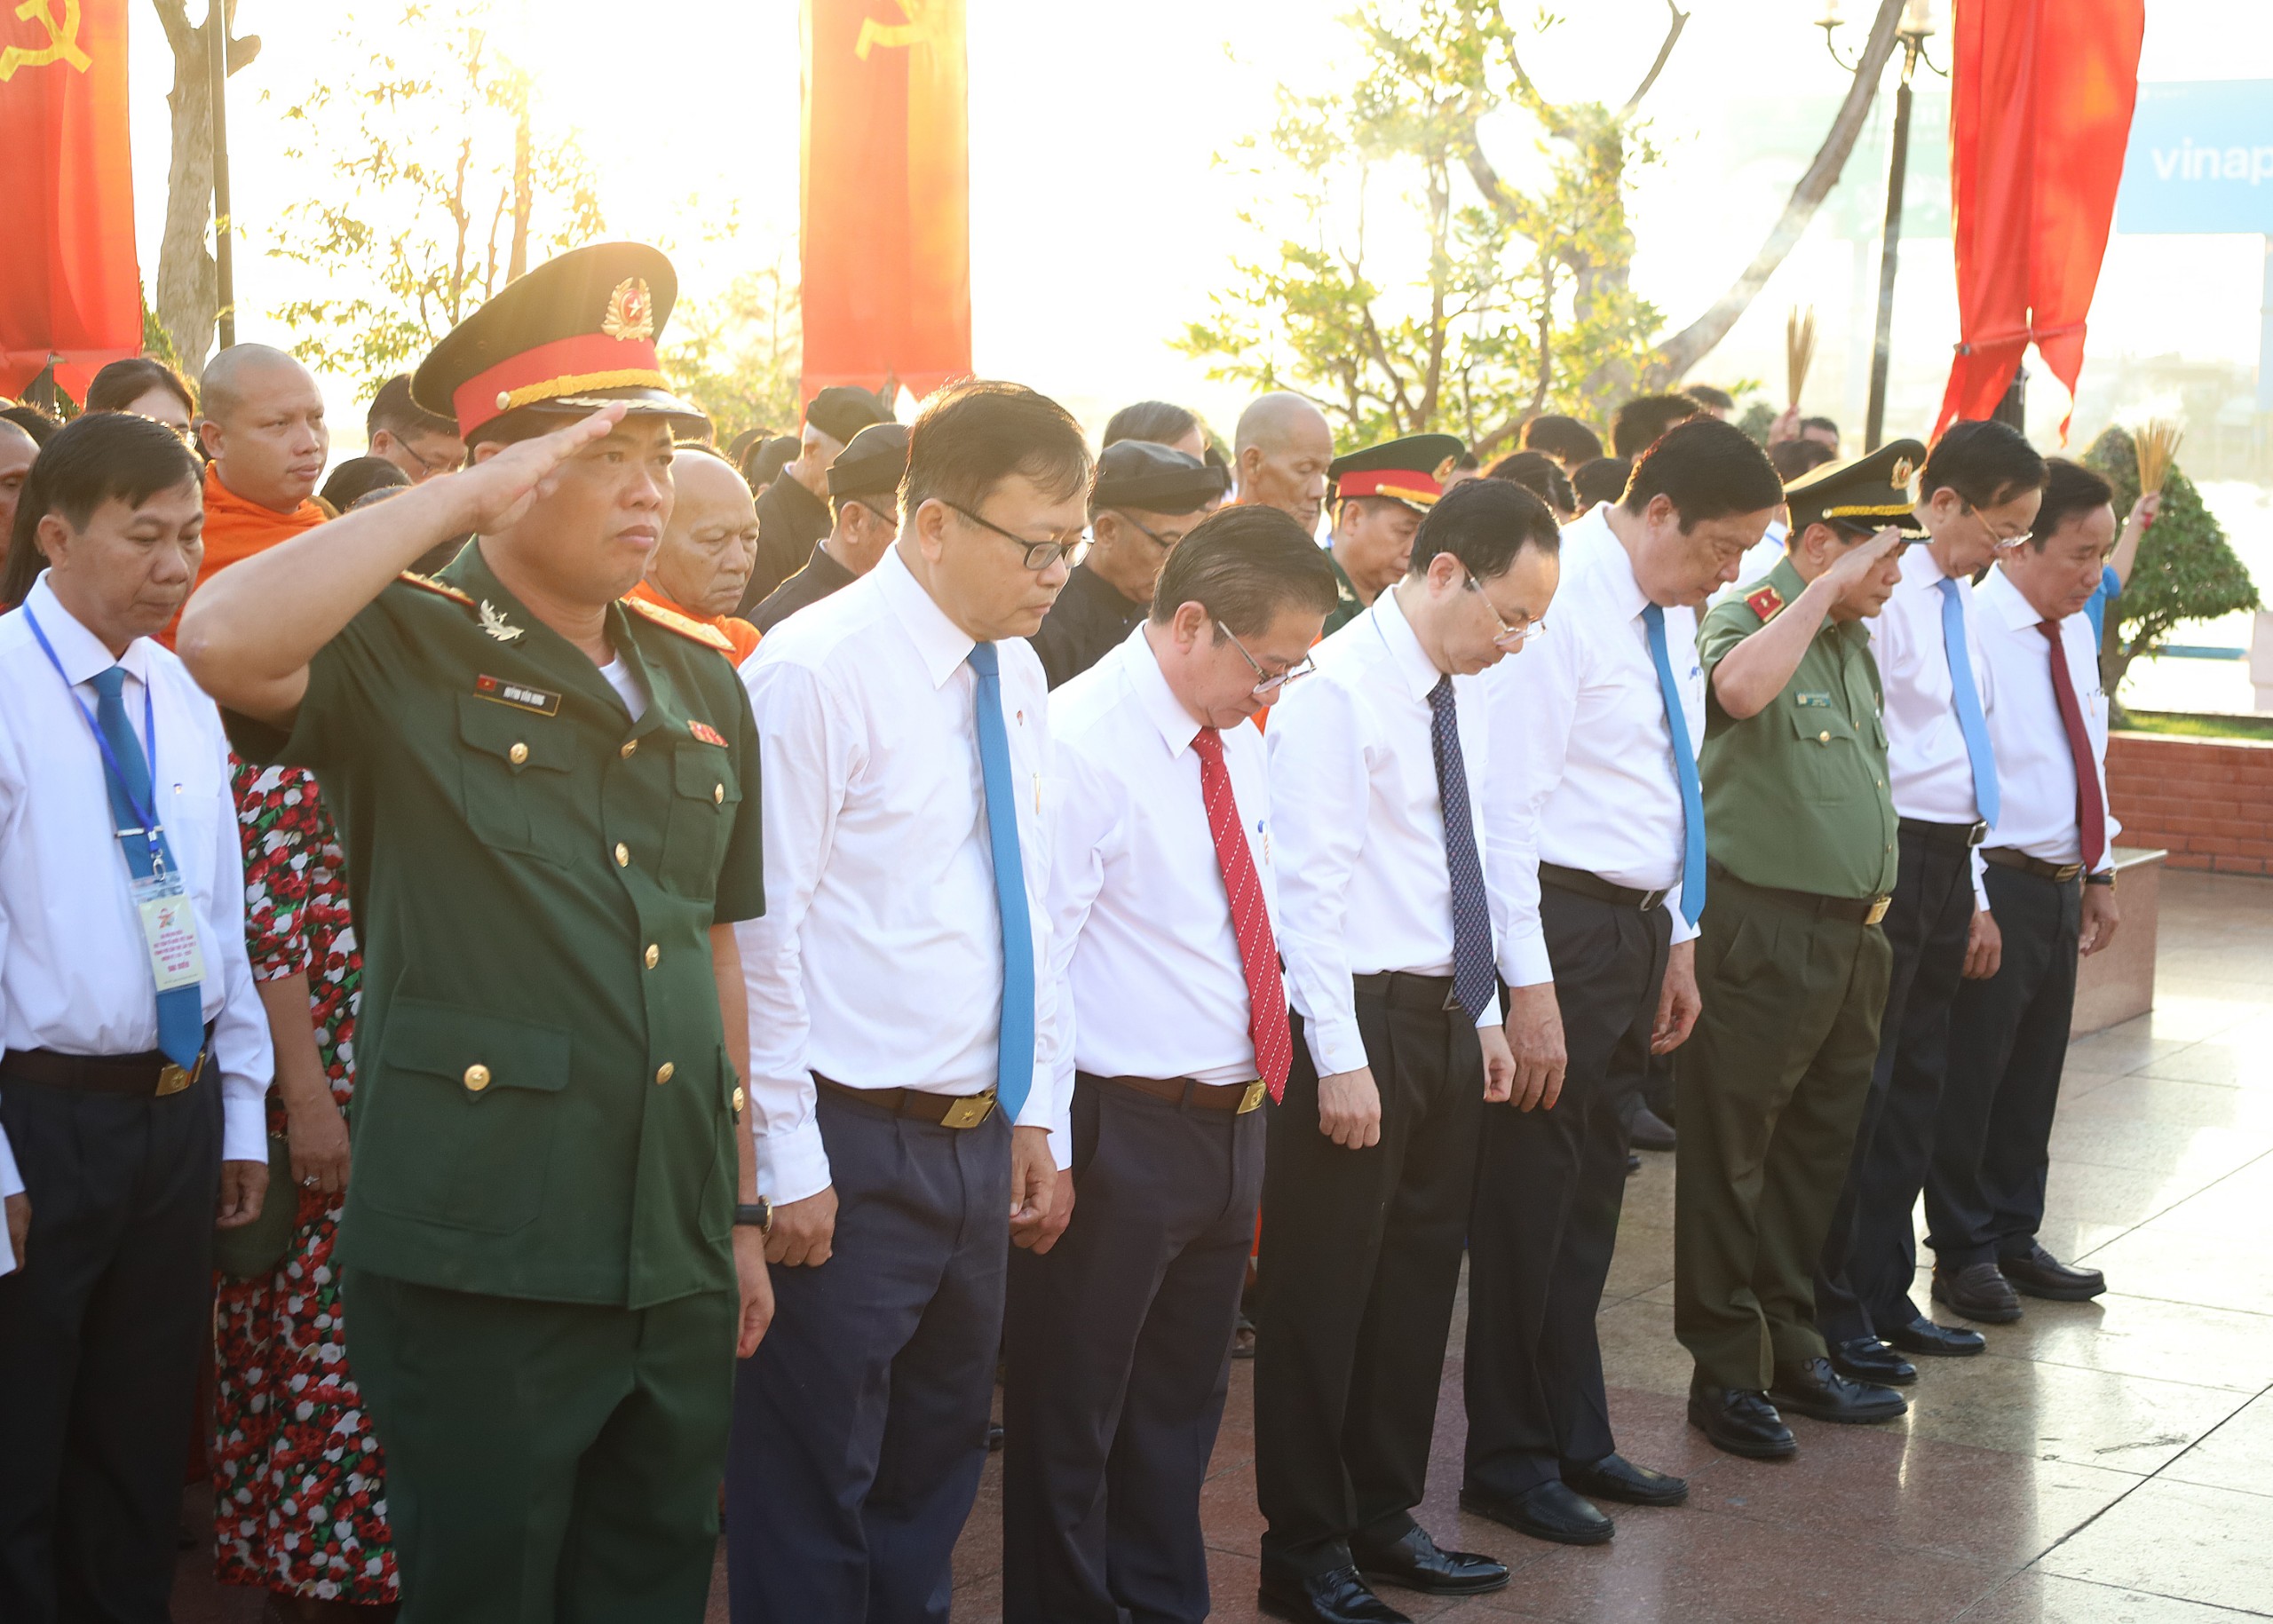 Trong giờ phút thiêng liêng, Đoàn đại biểu đã dành phút mặc niệm tưởng nhớ Chủ tịch Hồ Chí Minh Anh hùng giải phóng dân tộc Lãnh tụ thiên tài của Đảng và nhân dân ta Nhà văn hóa kiệt xuất của Việt Nam.